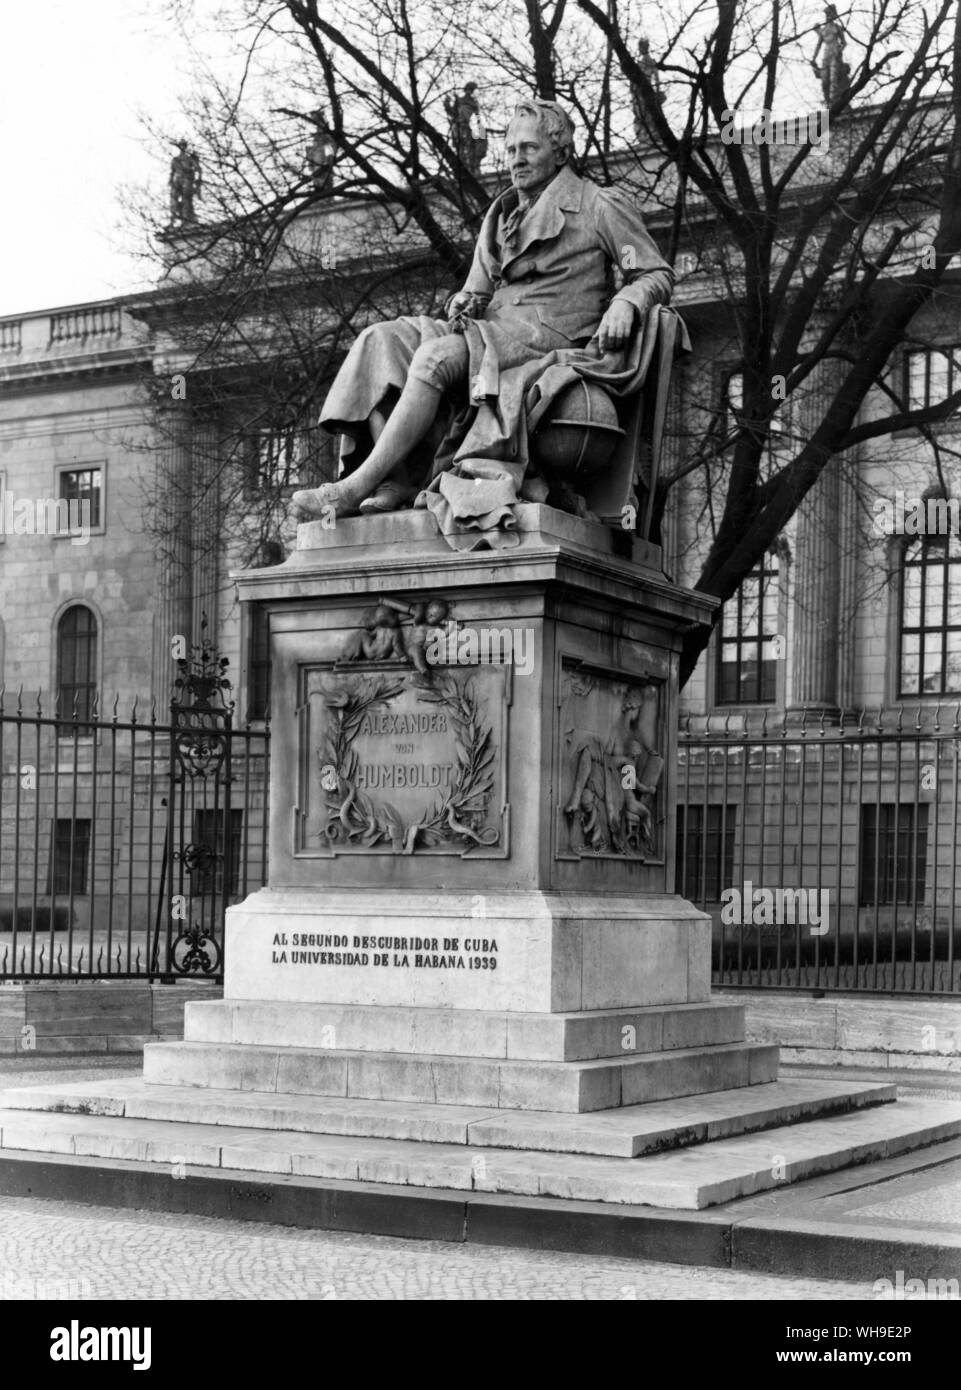 Alexander von Humboldt (1769-1859), German geophysicist, botanist, geologist and writer. Stock Photo